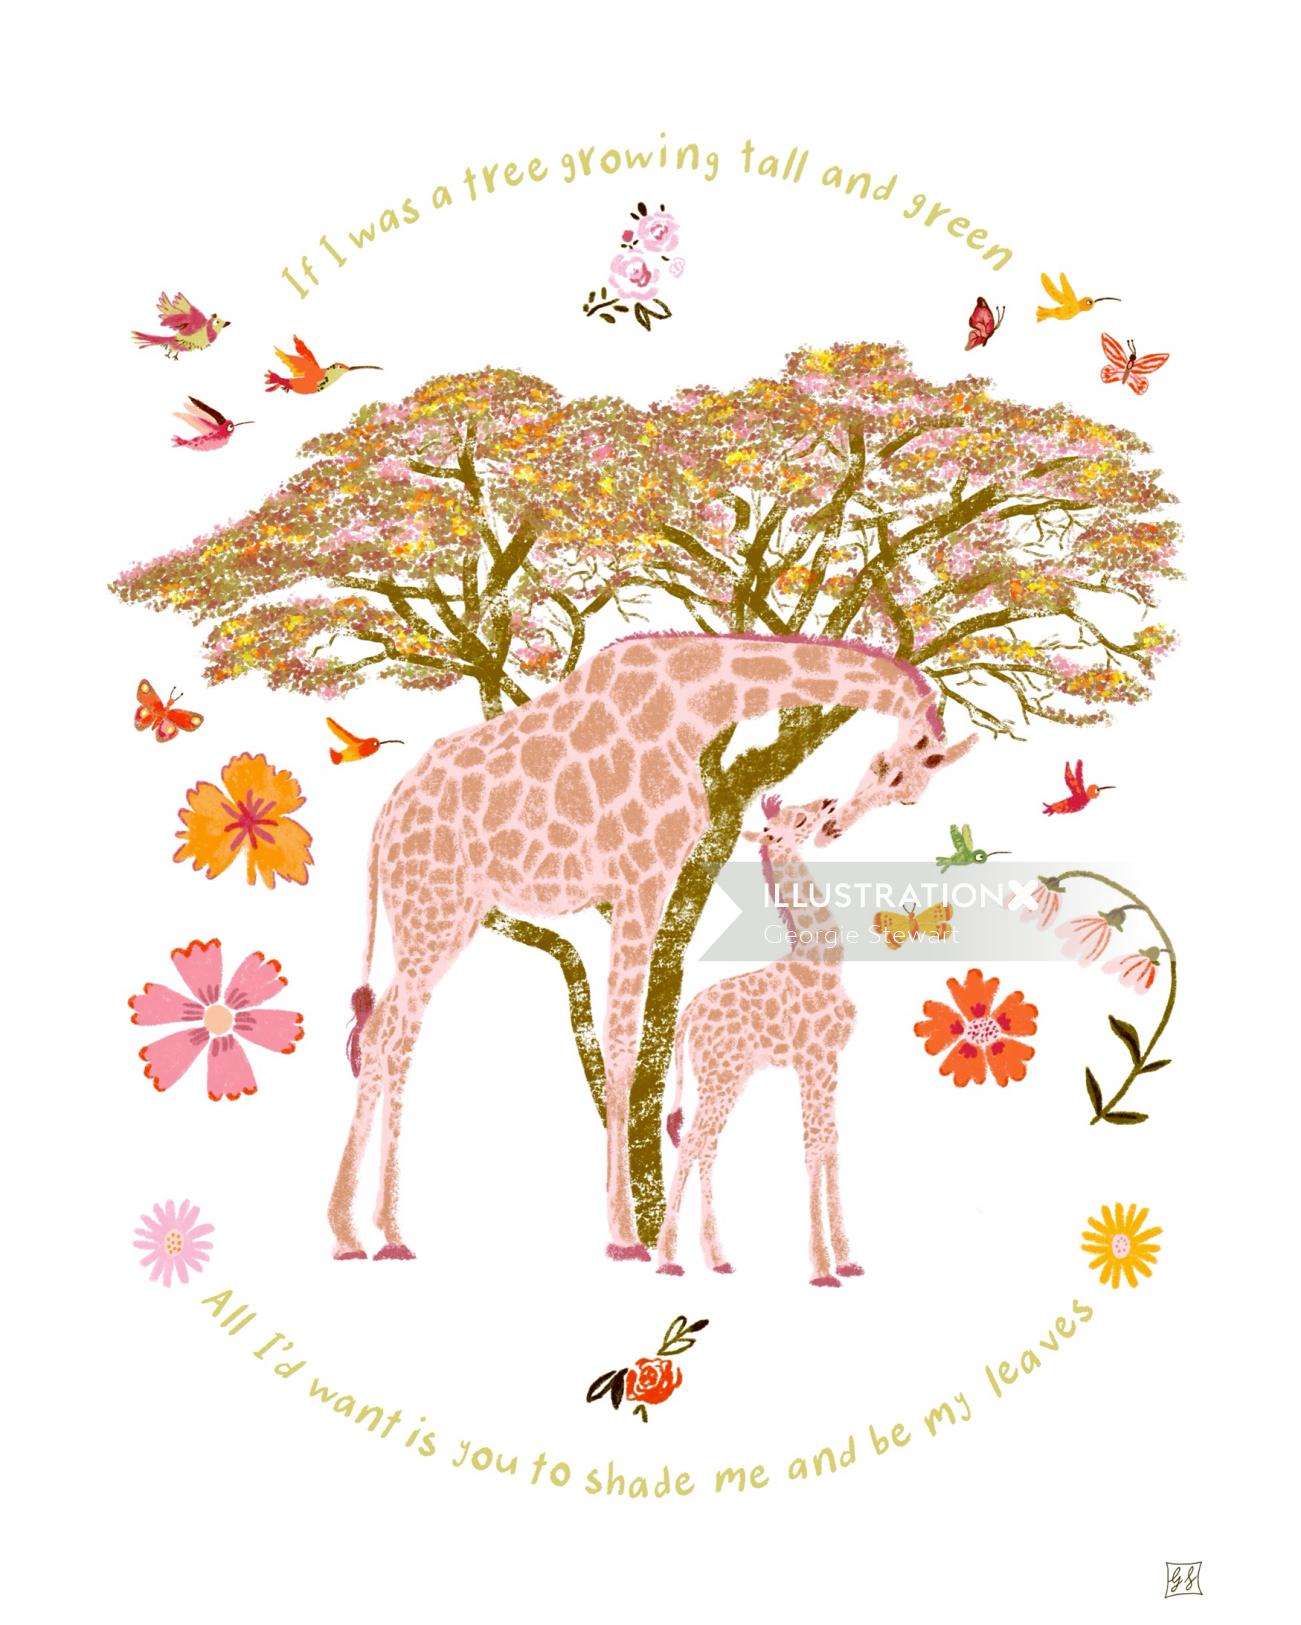 Animal Giraffe illustration for Baby Shower Gifts 